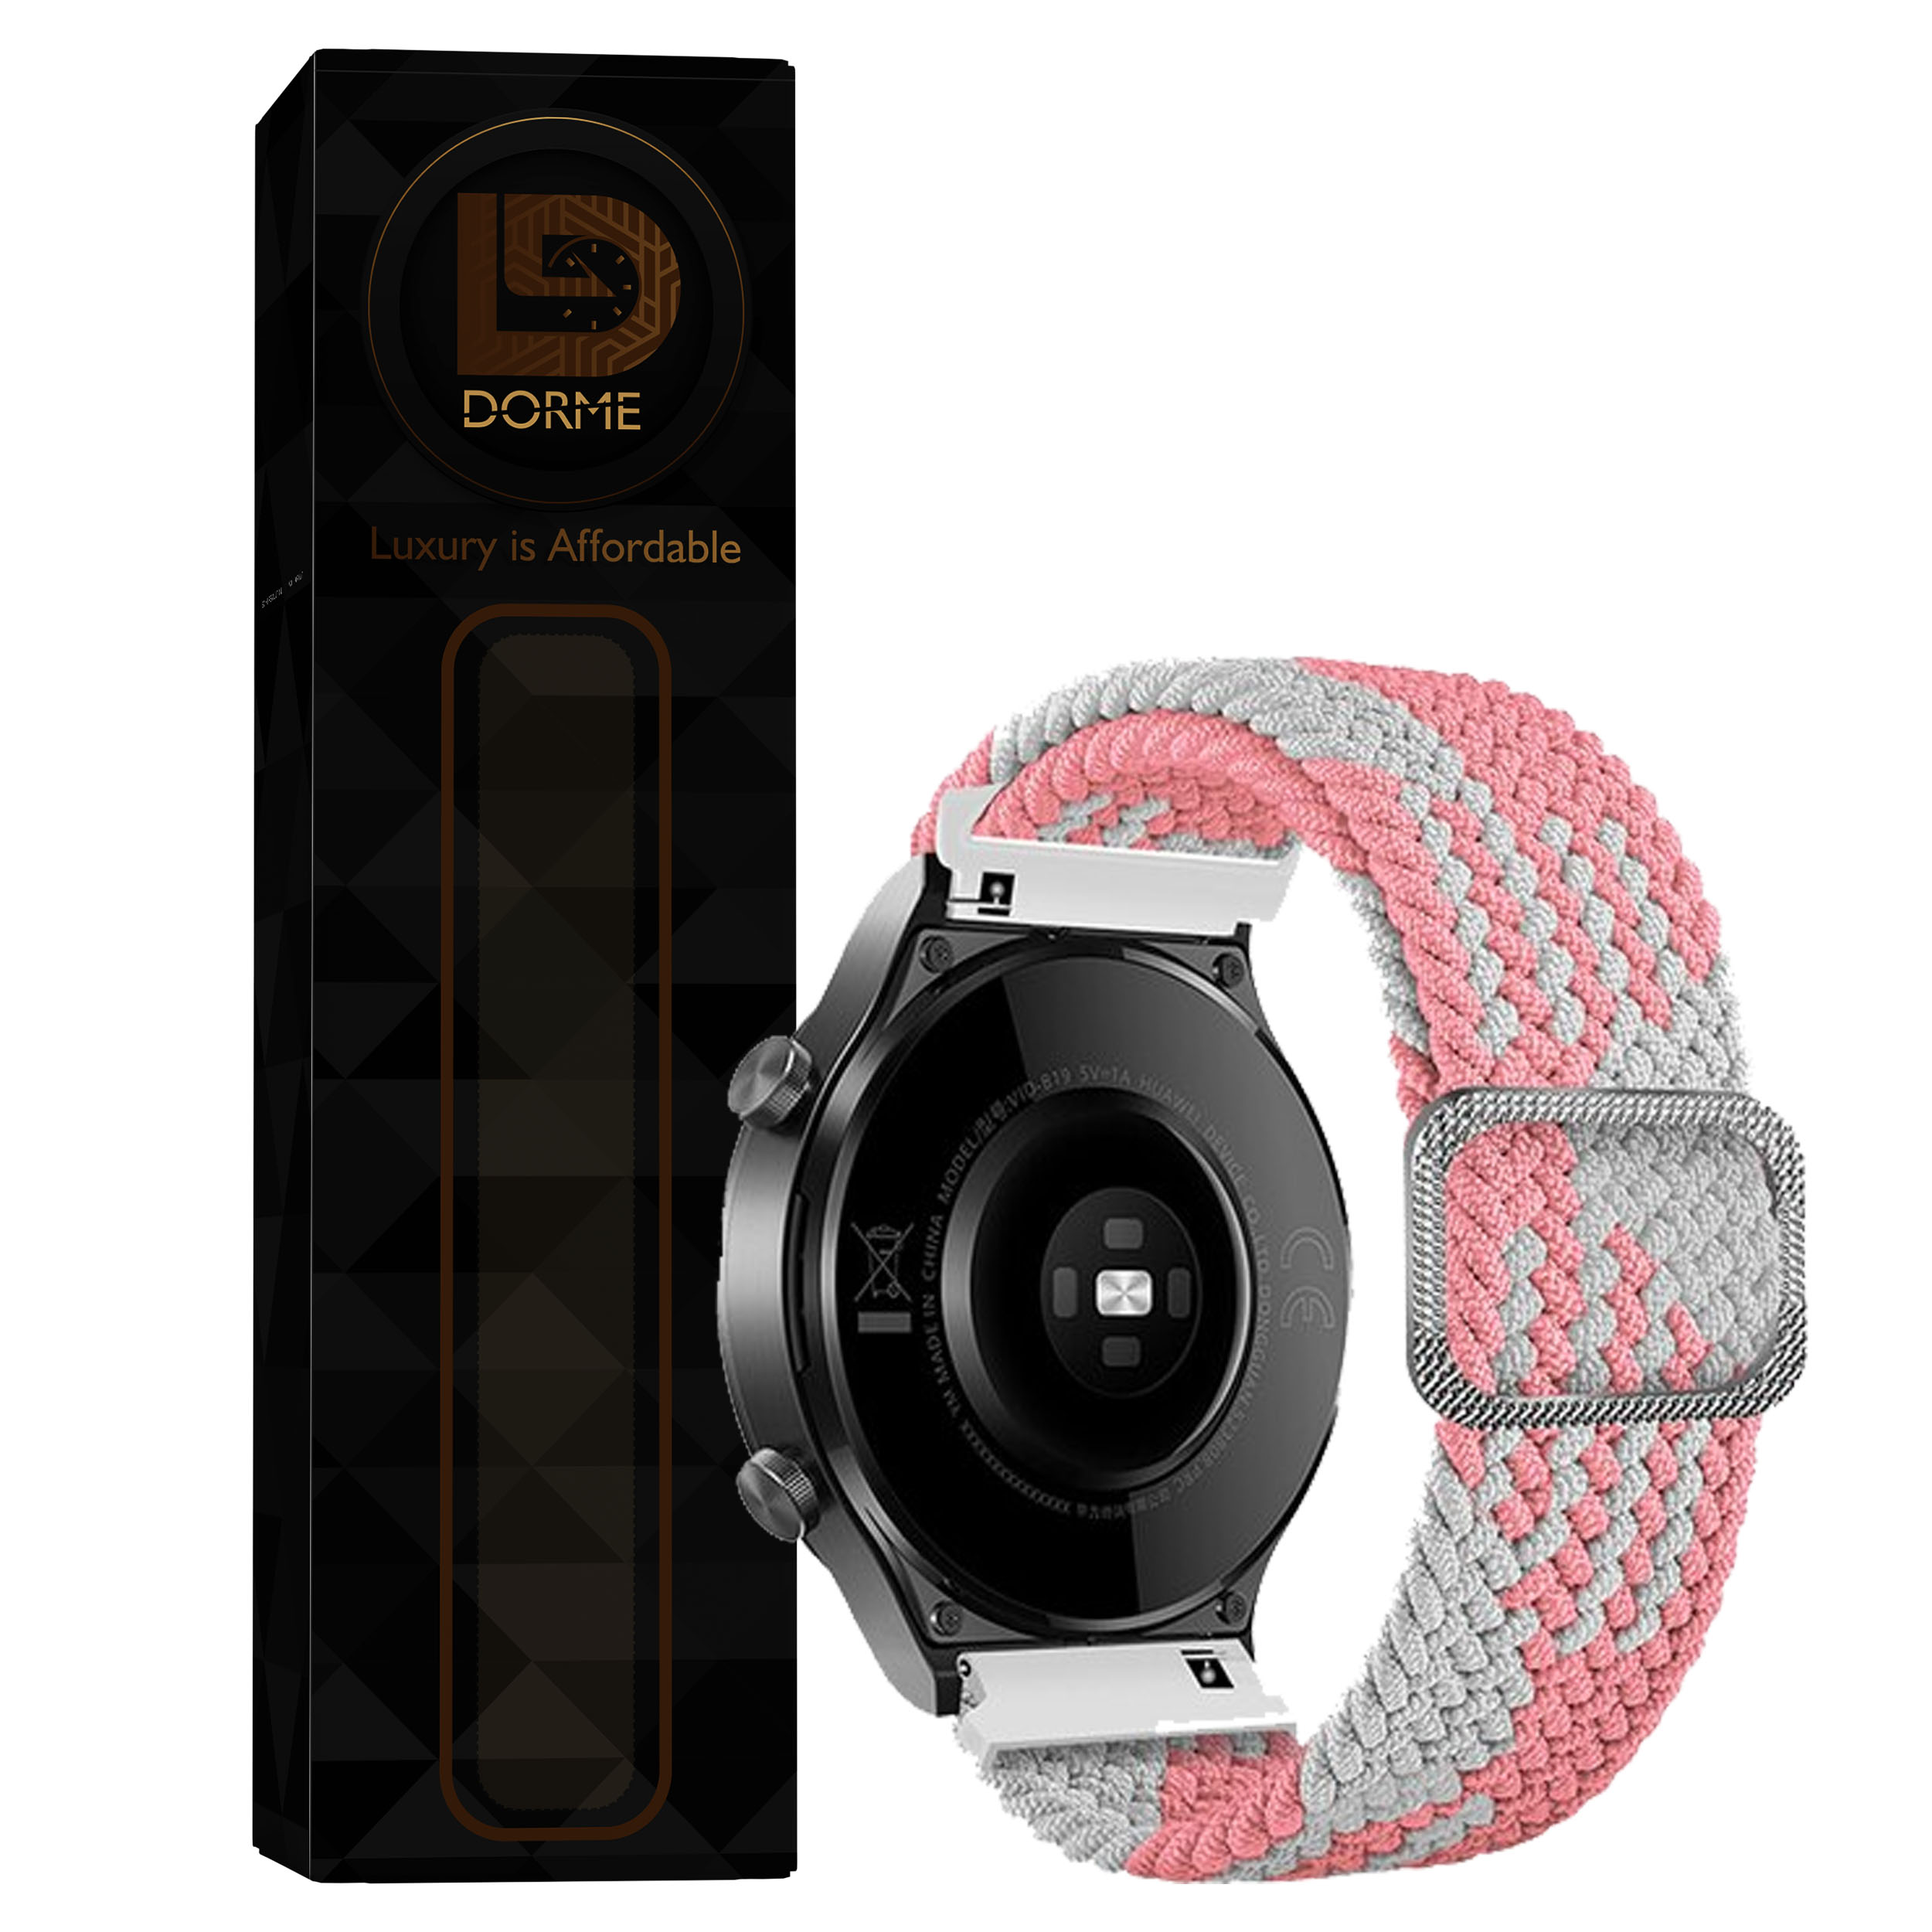 نقد و بررسی بند درمه مدل Sticken مناسب برای ساعت هوشمند میبرو X1 توسط خریداران